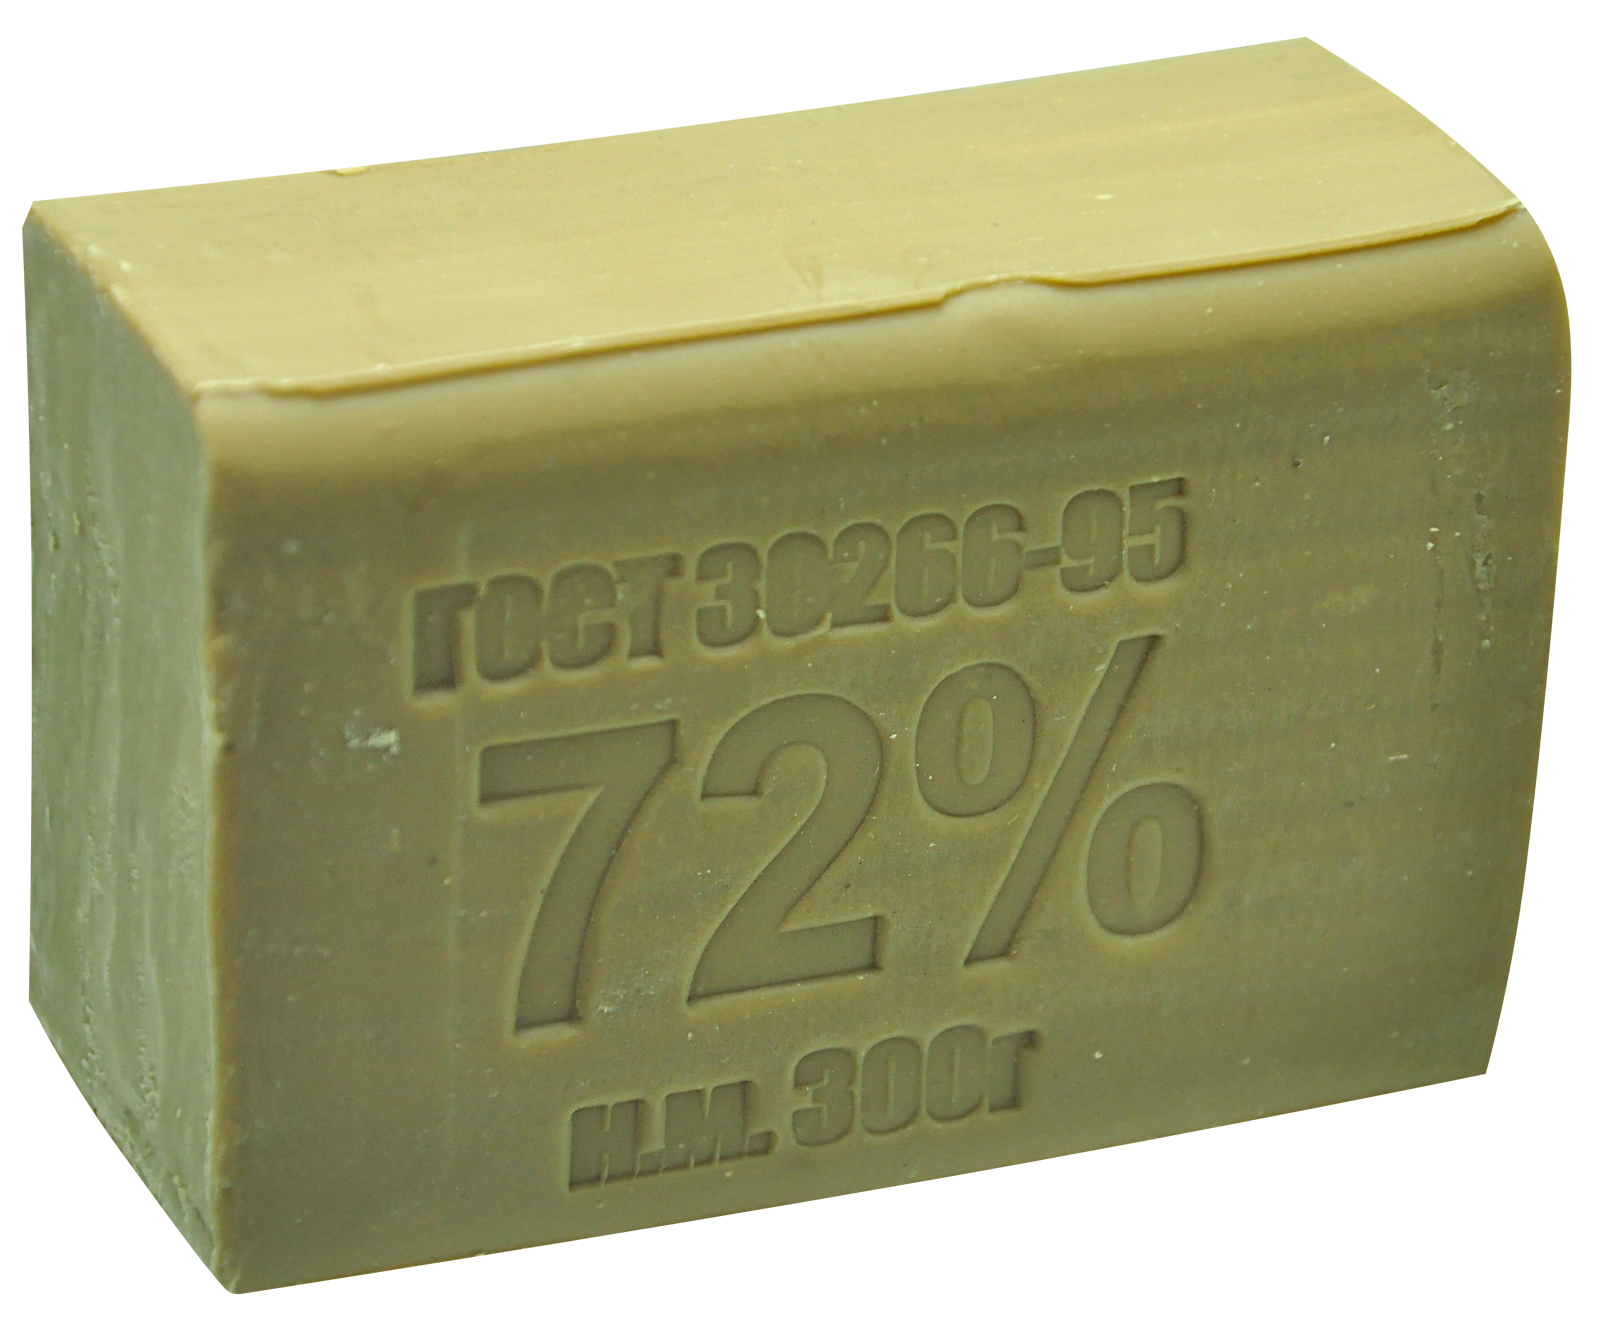 Мыло вб. Хозяйственное мыло 72% 300 г. Хозяйственное мыло Аист 72 300 гр. Мыло хозяйственное 72% (300 гр).